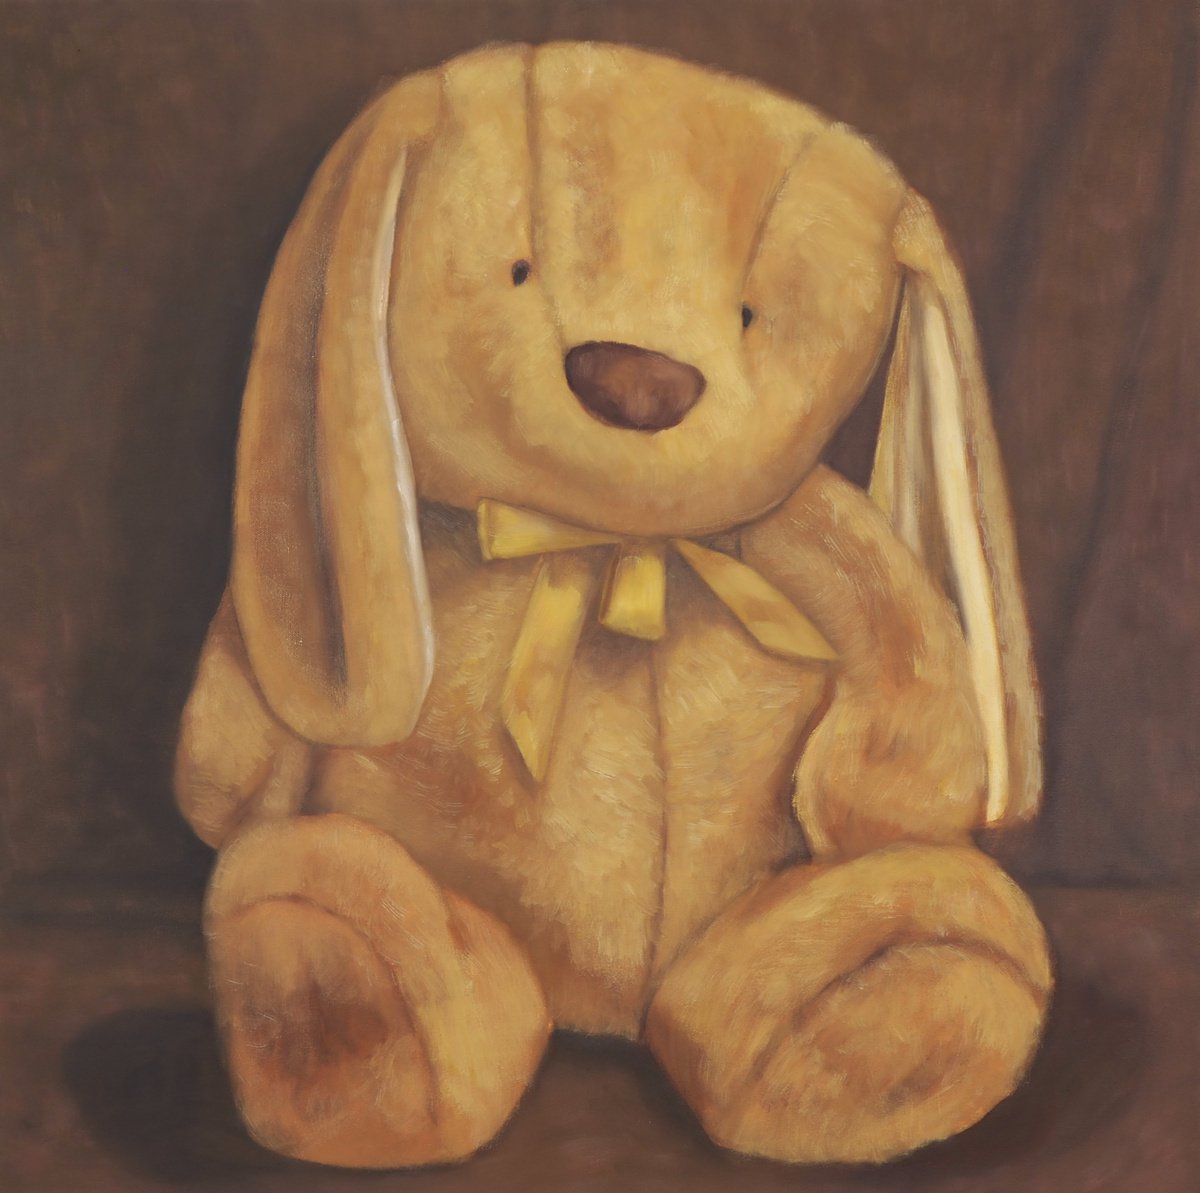 Rabbit by Seth Feriano